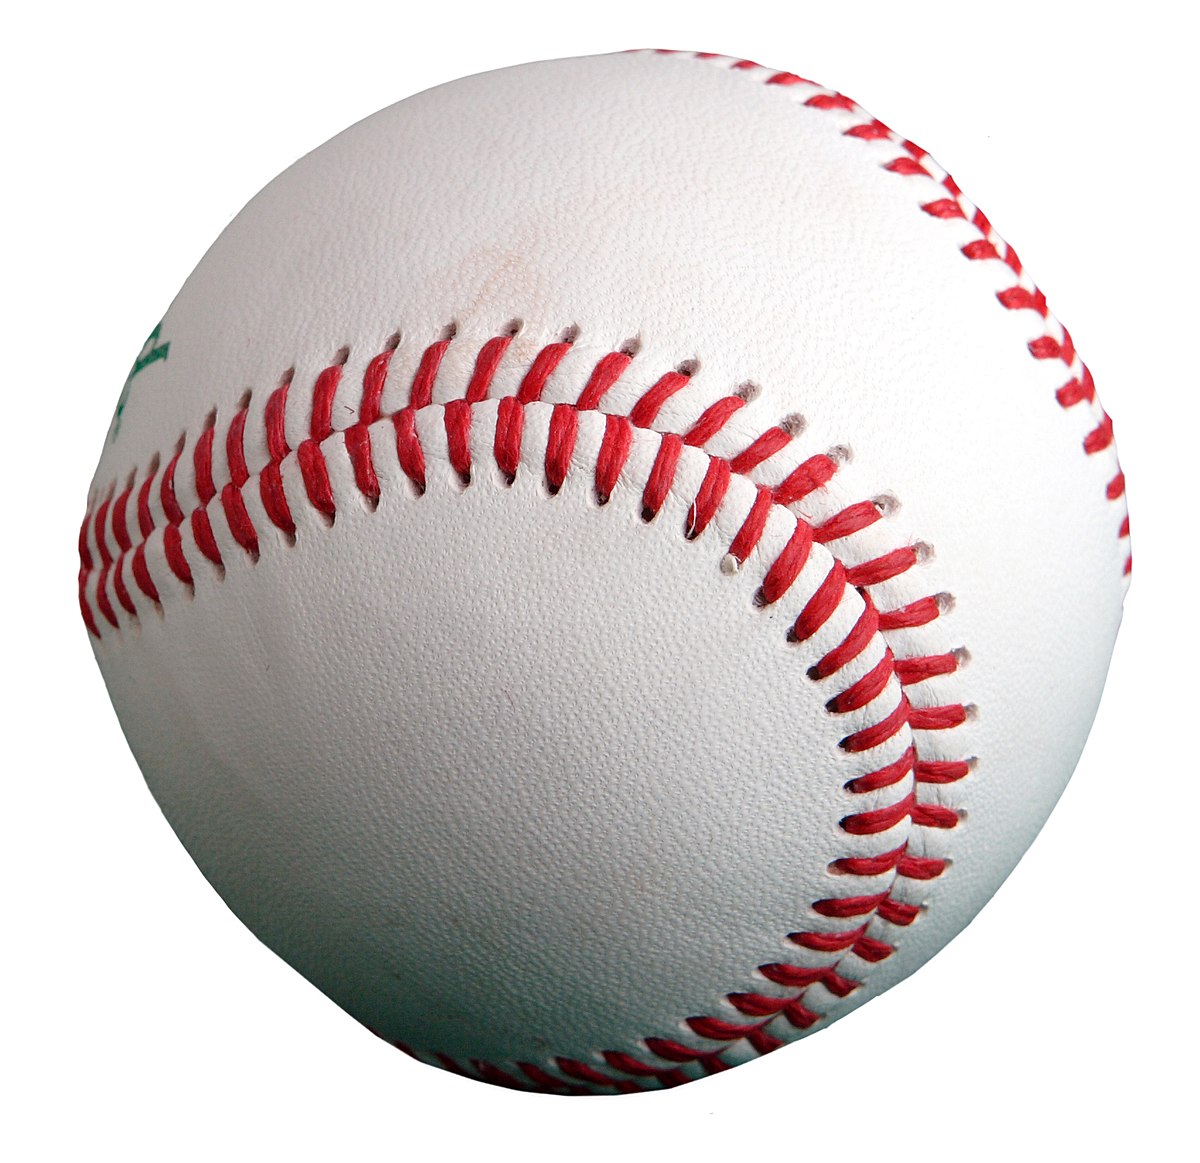 Balle de baseball — Wikipédia